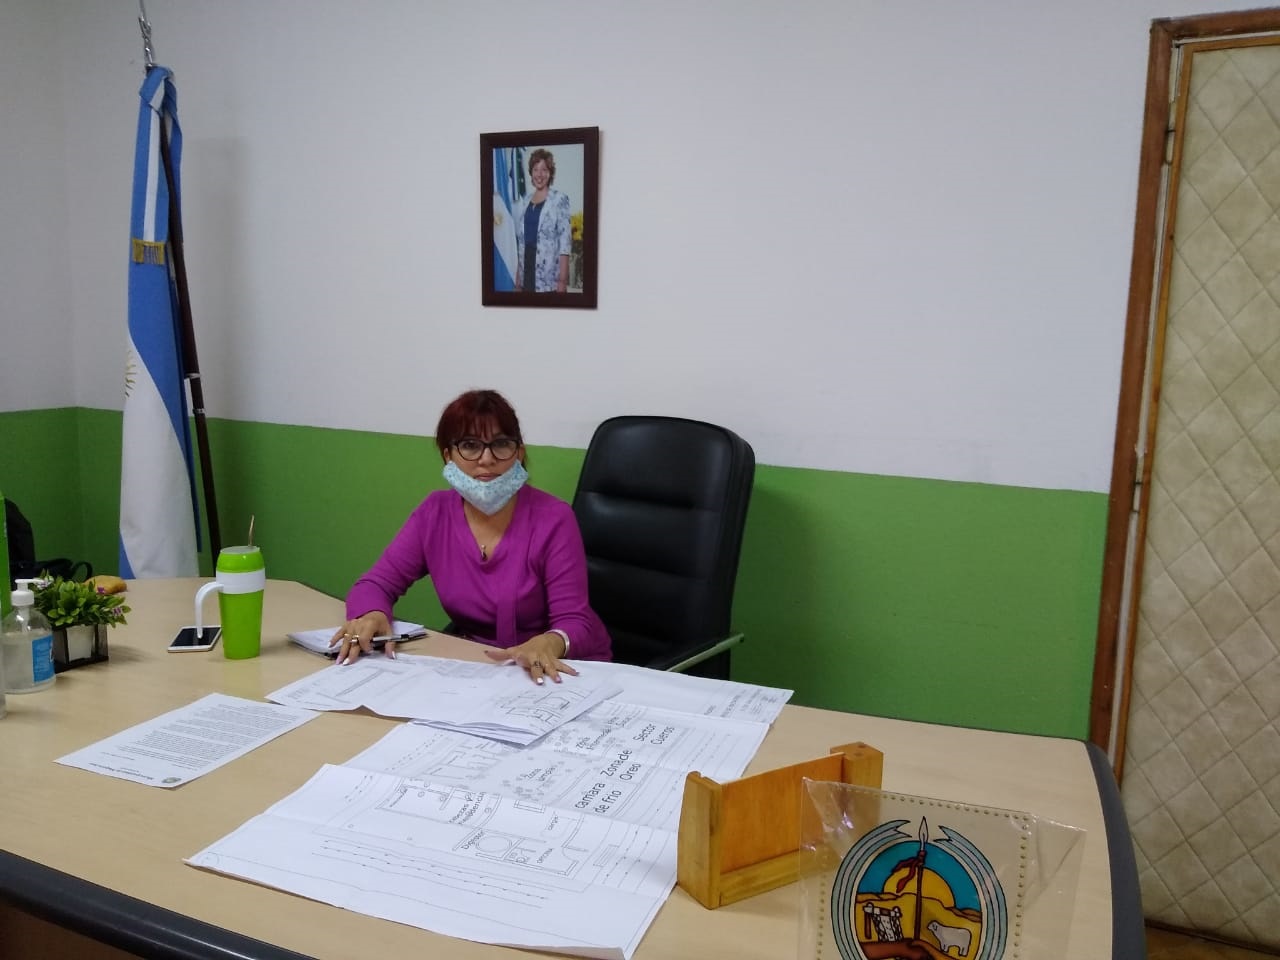 La intendente Silvina Frías (JSRN) calificó como "una necesidad" para muchas familias la vuelta a clases presenciales. Foto: gentileza.